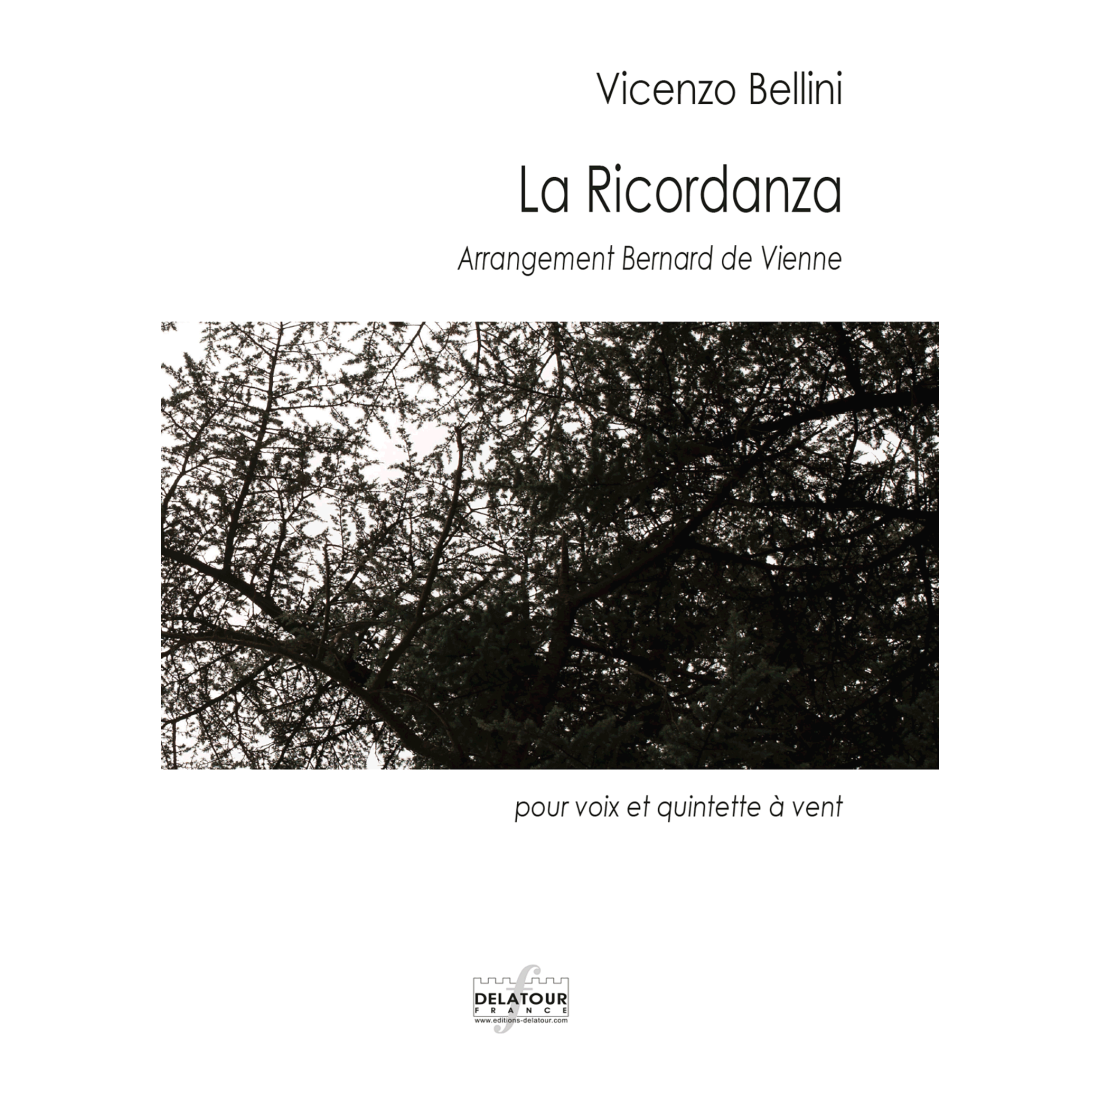 La ricordanza for voice and wind quintet